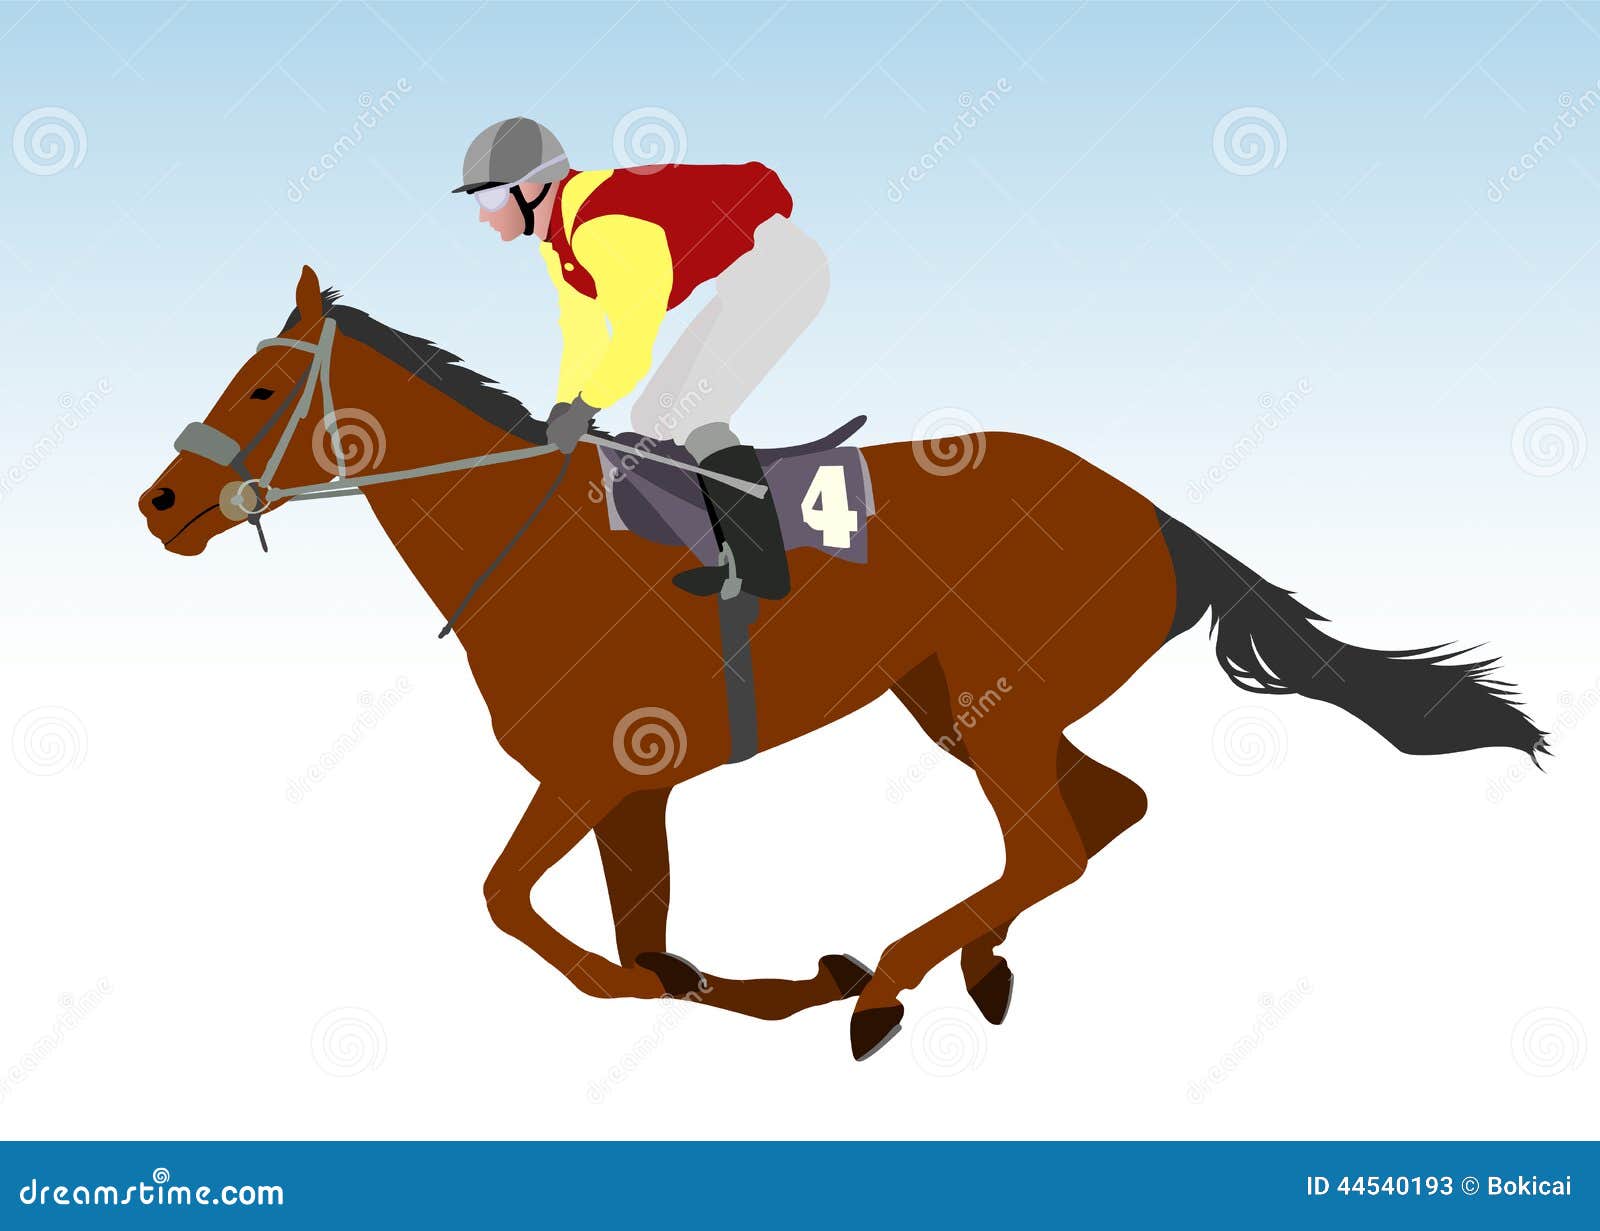 clipart horse and jockey - photo #40